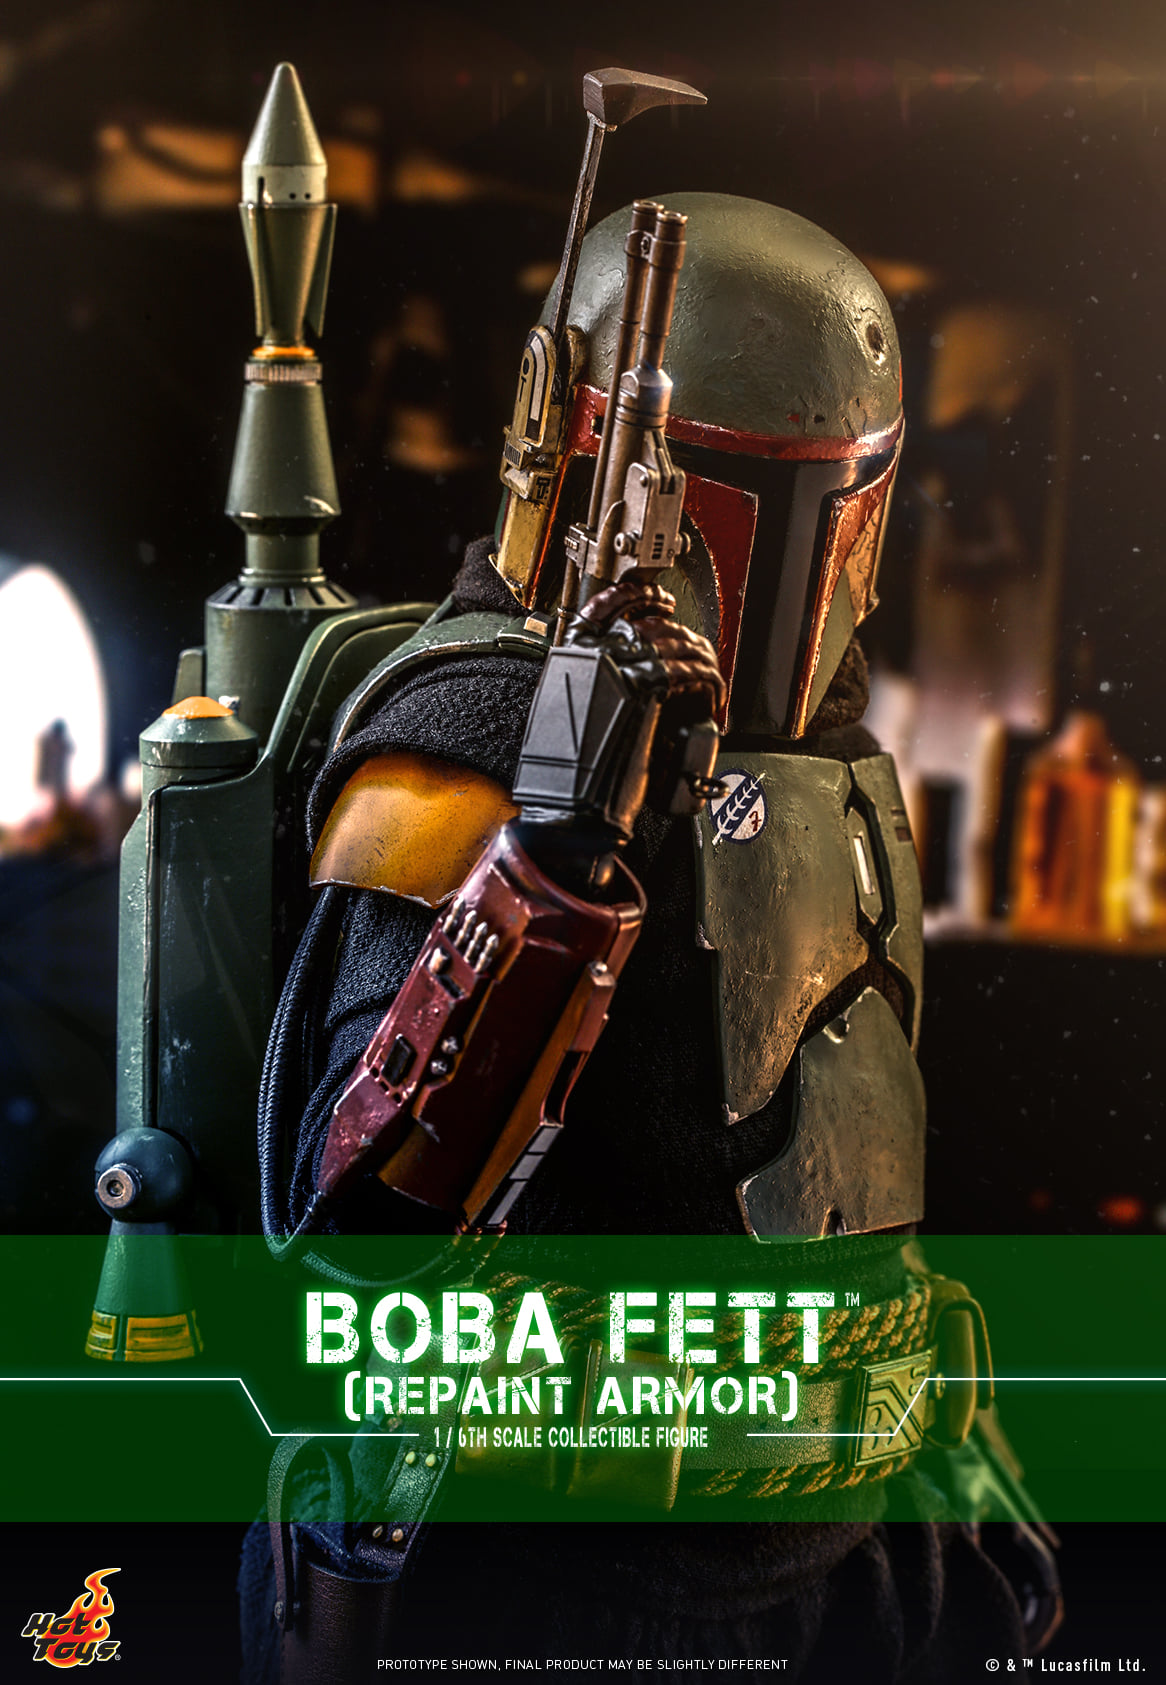 Hot Toys Star Wars Mandalorian Boba Fett Repaint Armor Sixth Scale Figure